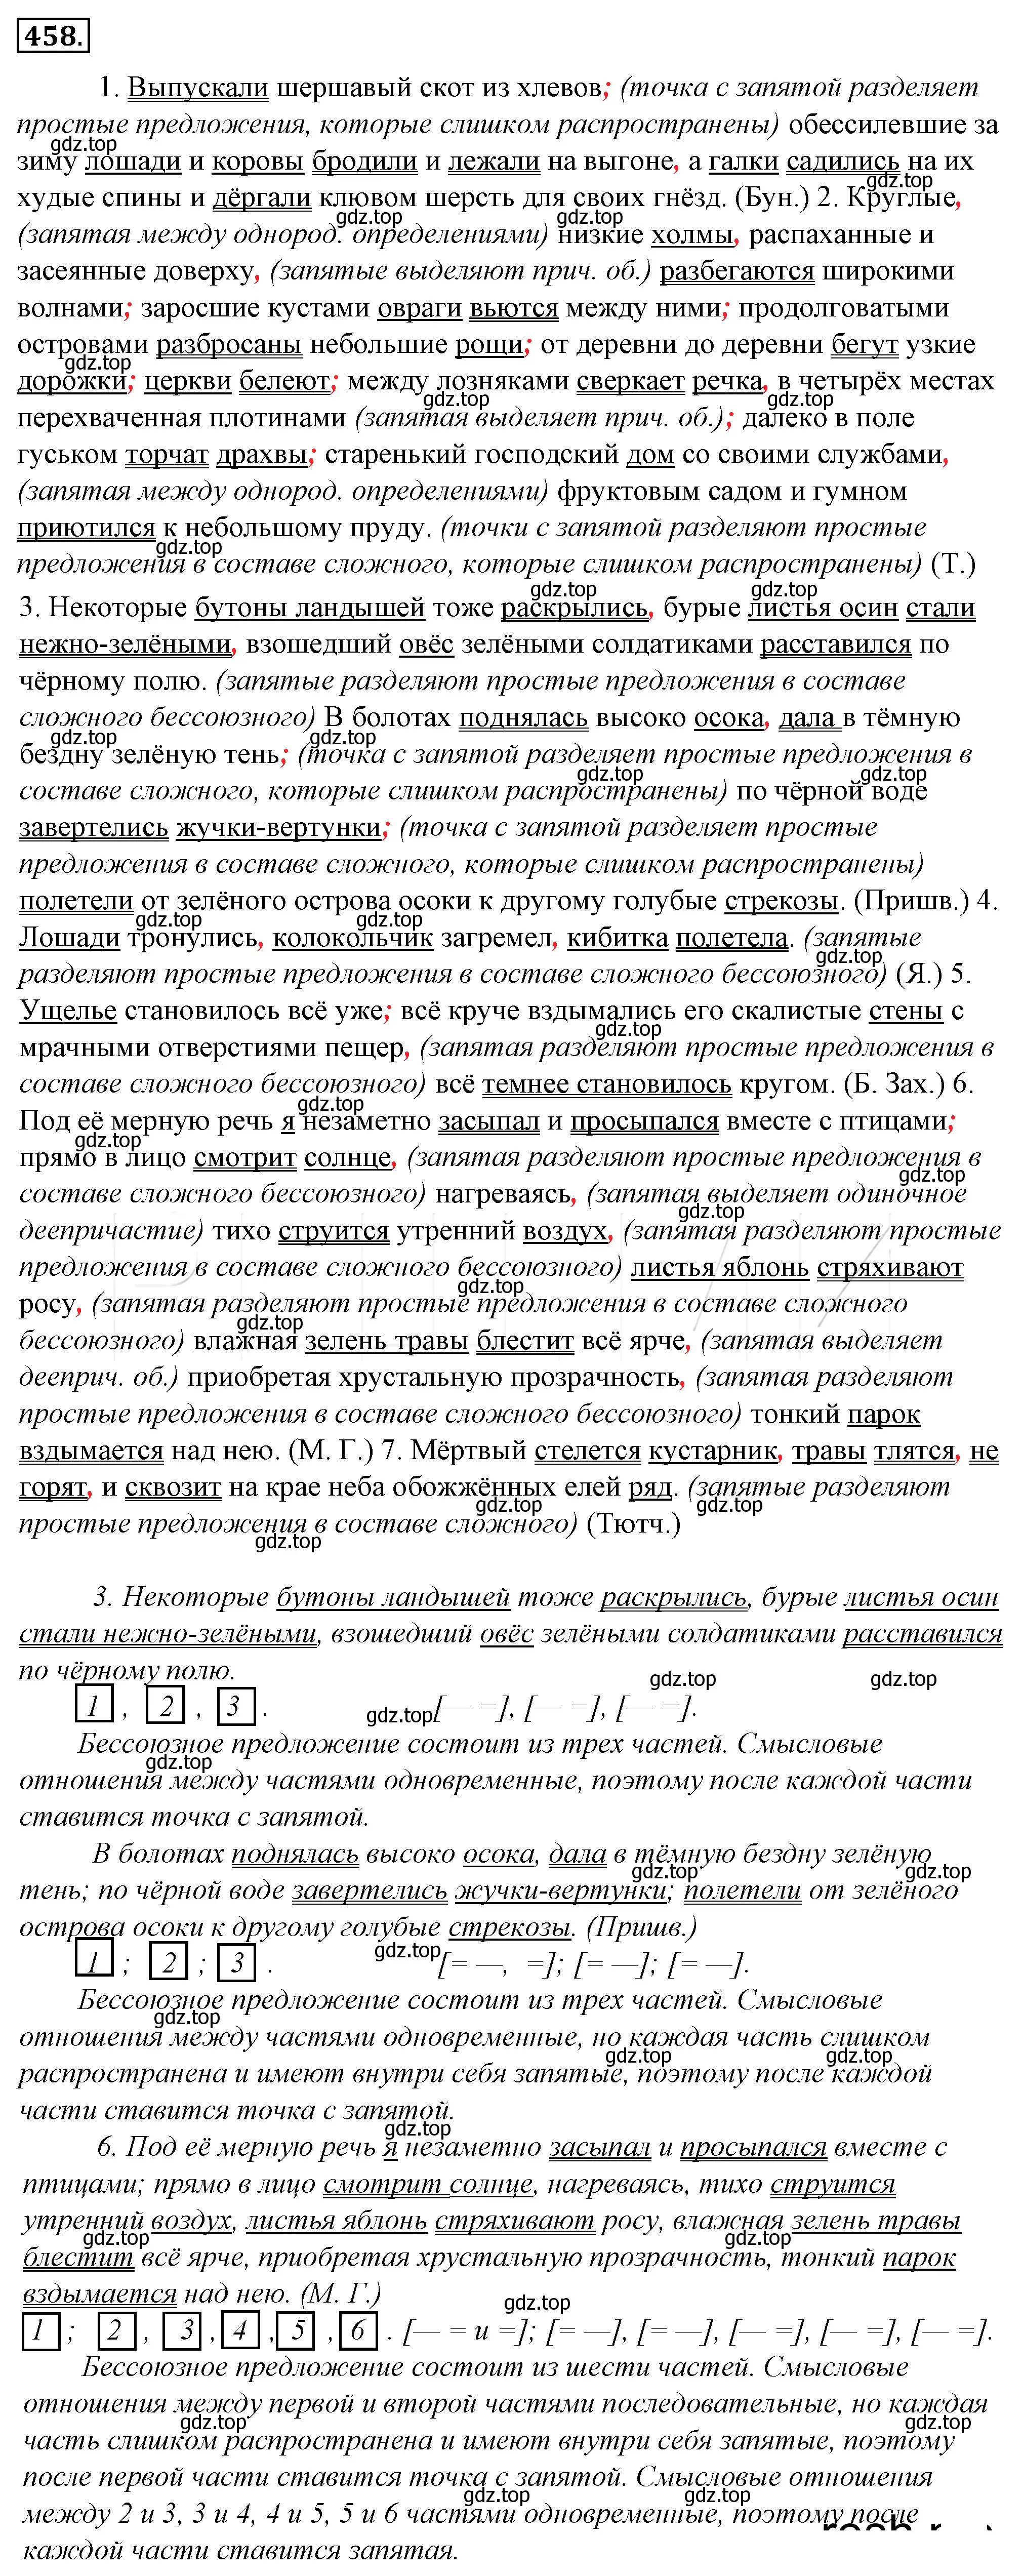 Решение 4. номер 123 (страница 176) гдз по русскому языку 10-11 класс Гольцова, Шамшин, учебник 2 часть